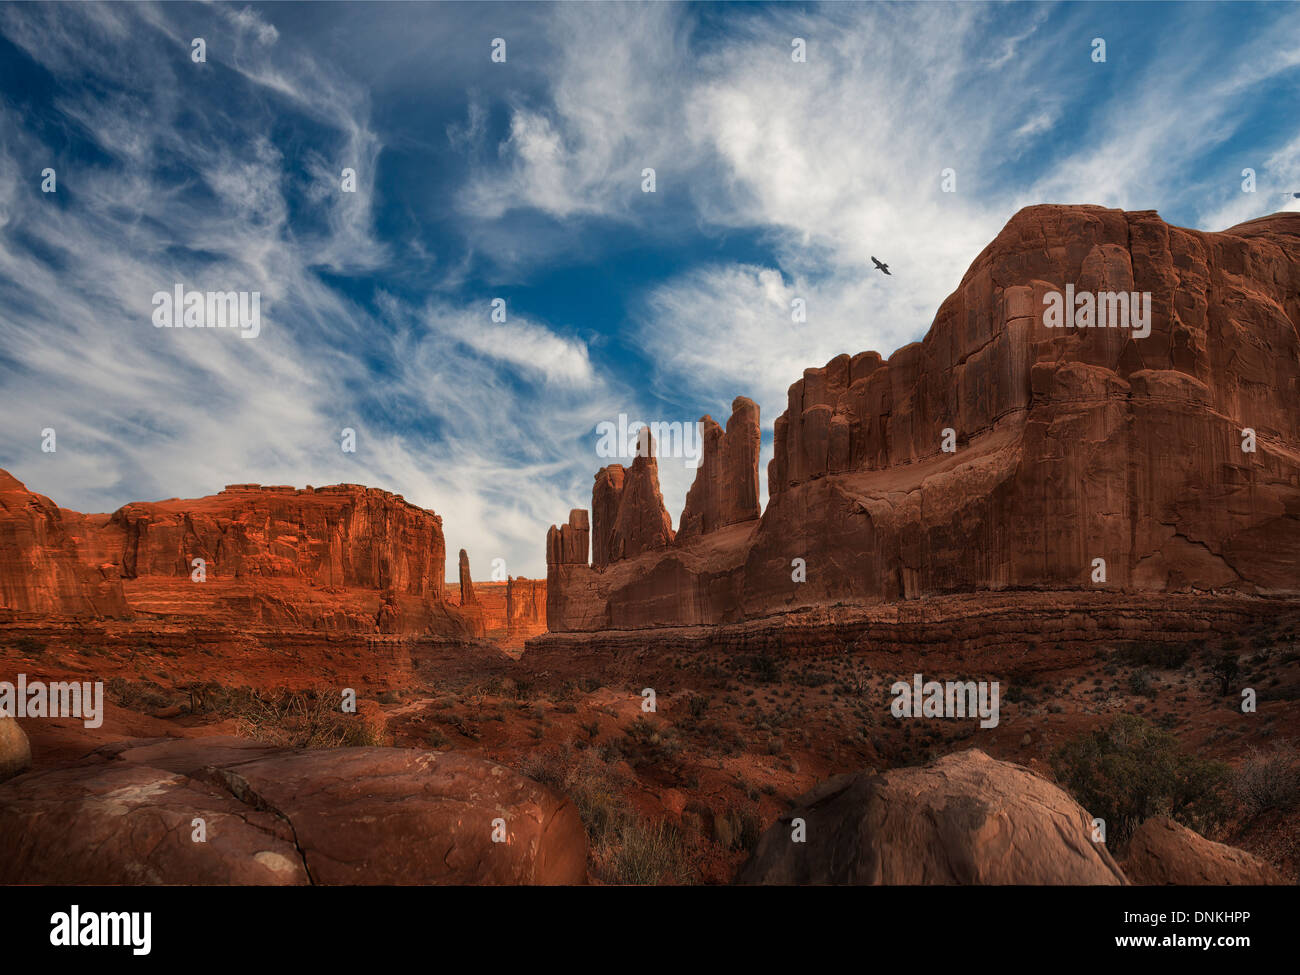 Ein Panorama große Datei hochauflösendes Bild vom Park Ave übersehen im Arches National Park in der Nähe von Moab Utah gedreht Stockfoto